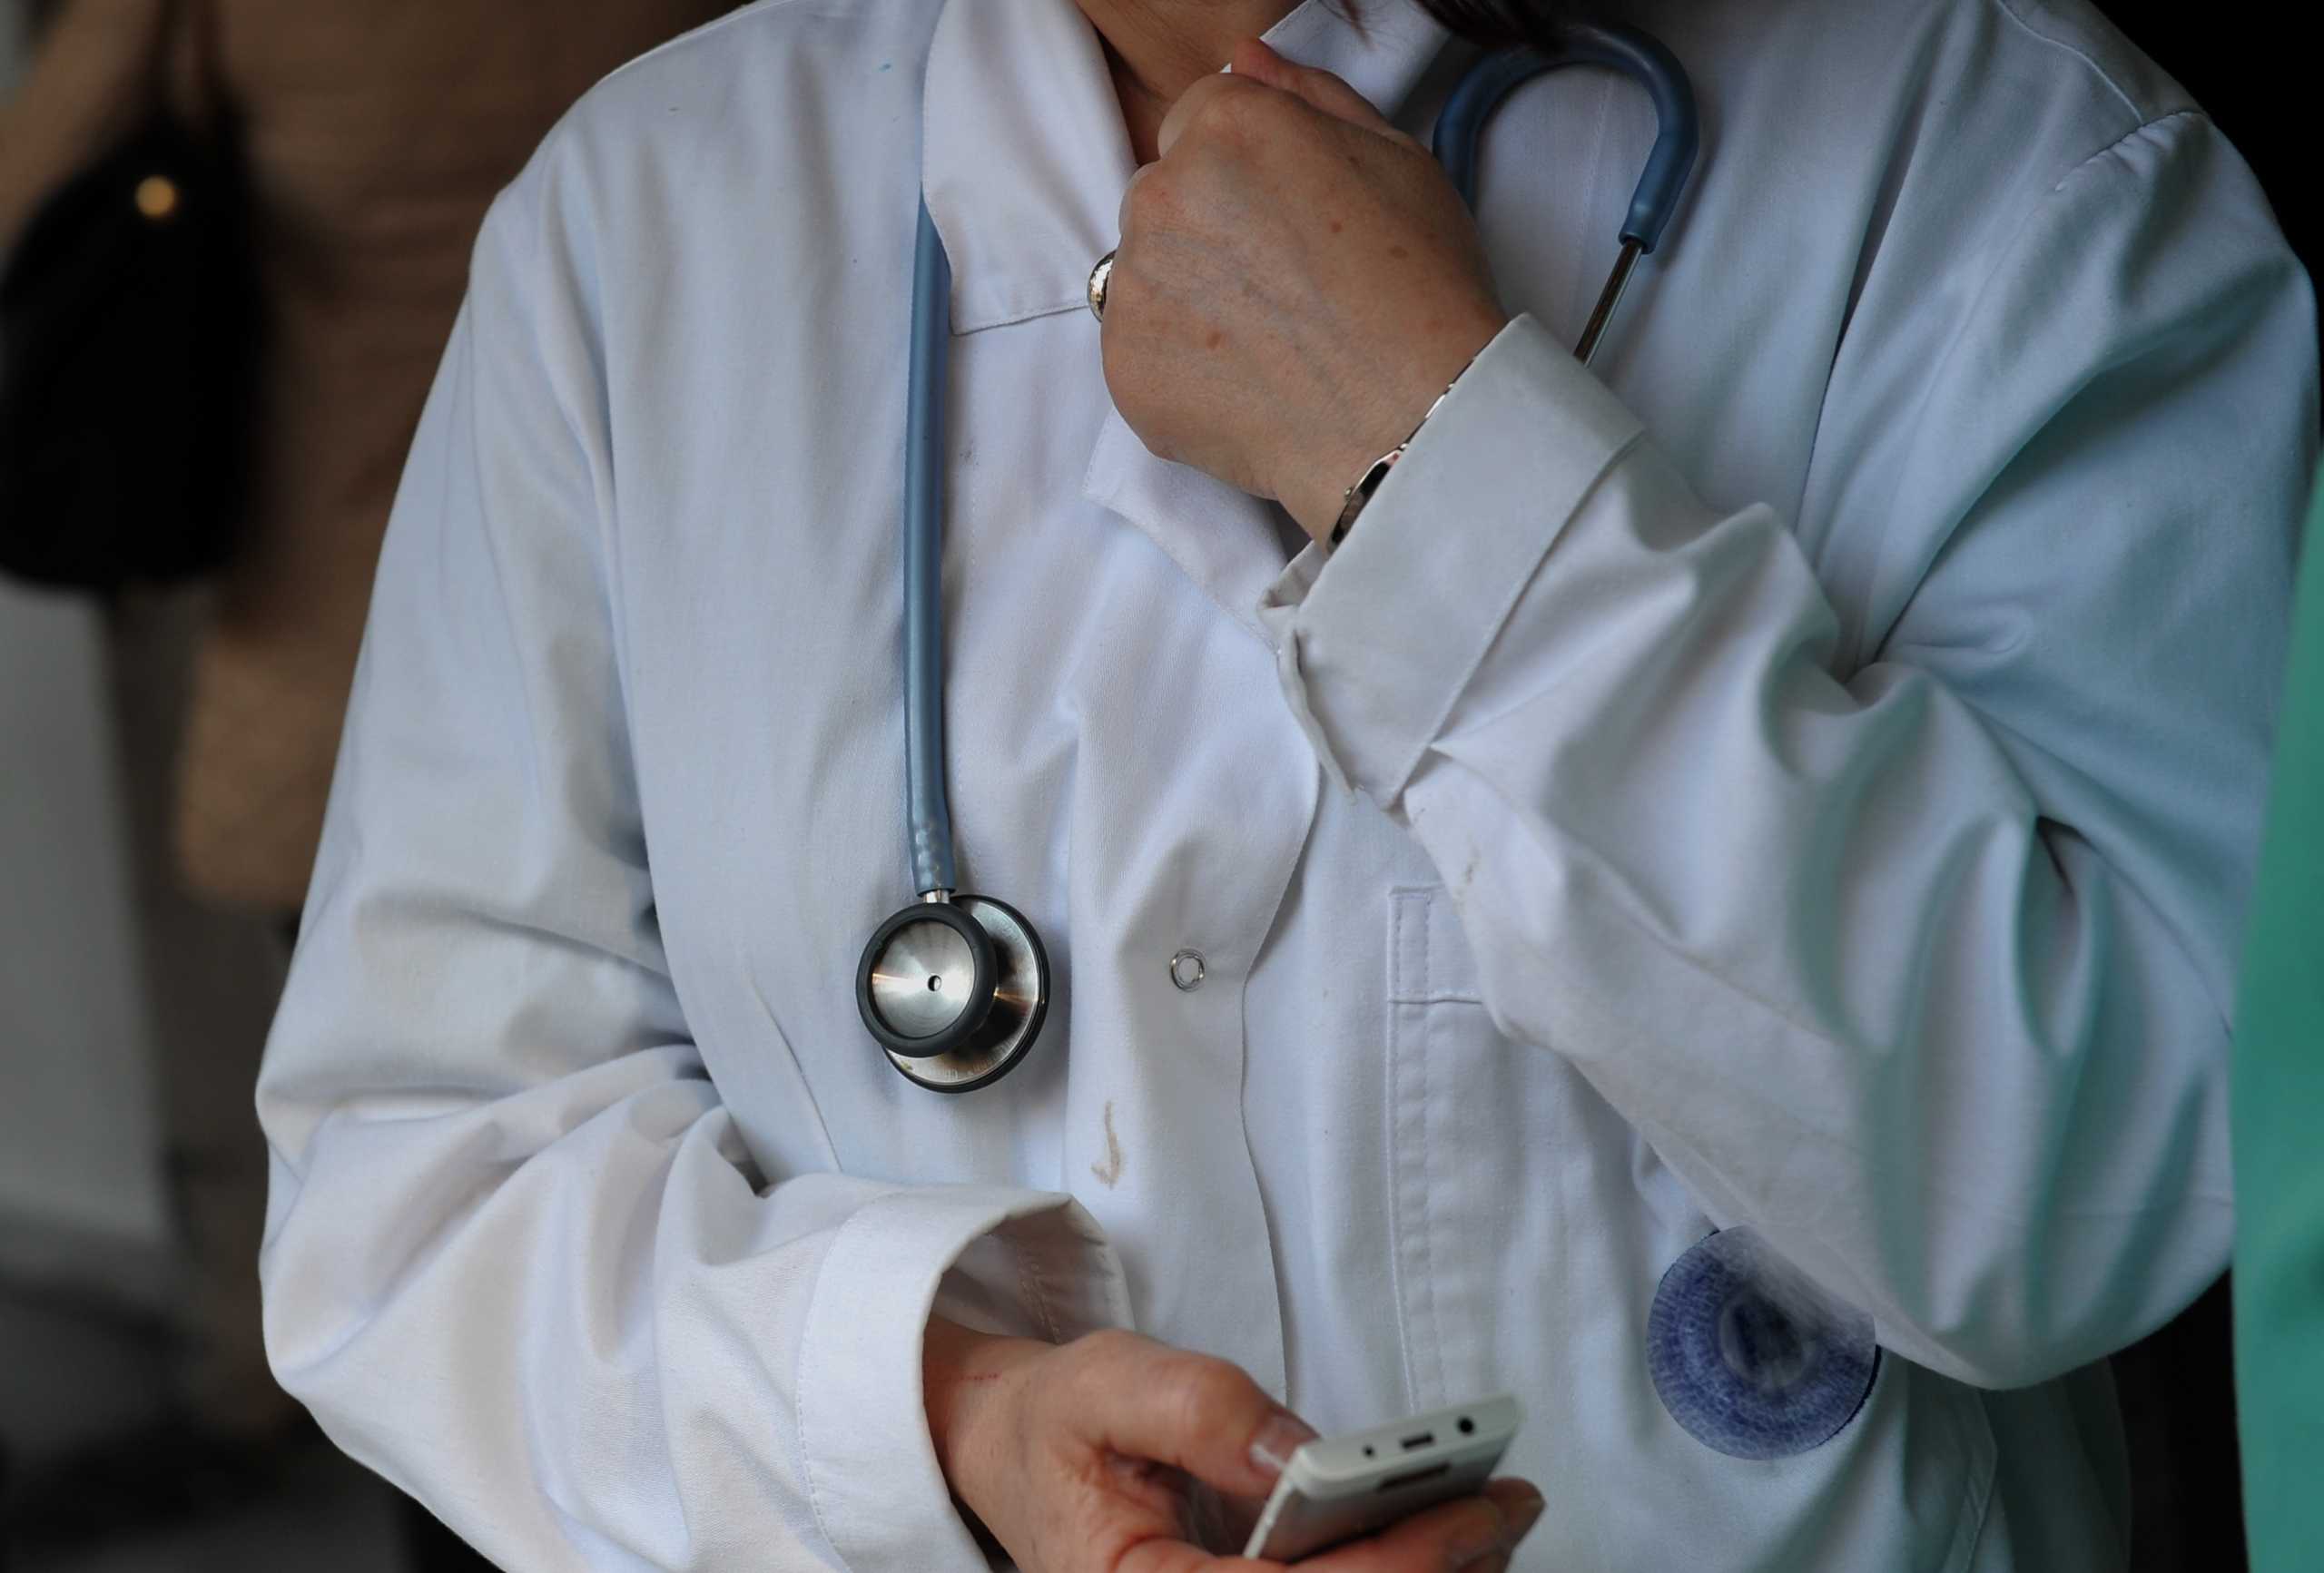 Προσωπικός γιατρός: Ποιες «ποινές» περιμένουν τους πολίτες που δεν θα τον επιλέξουν